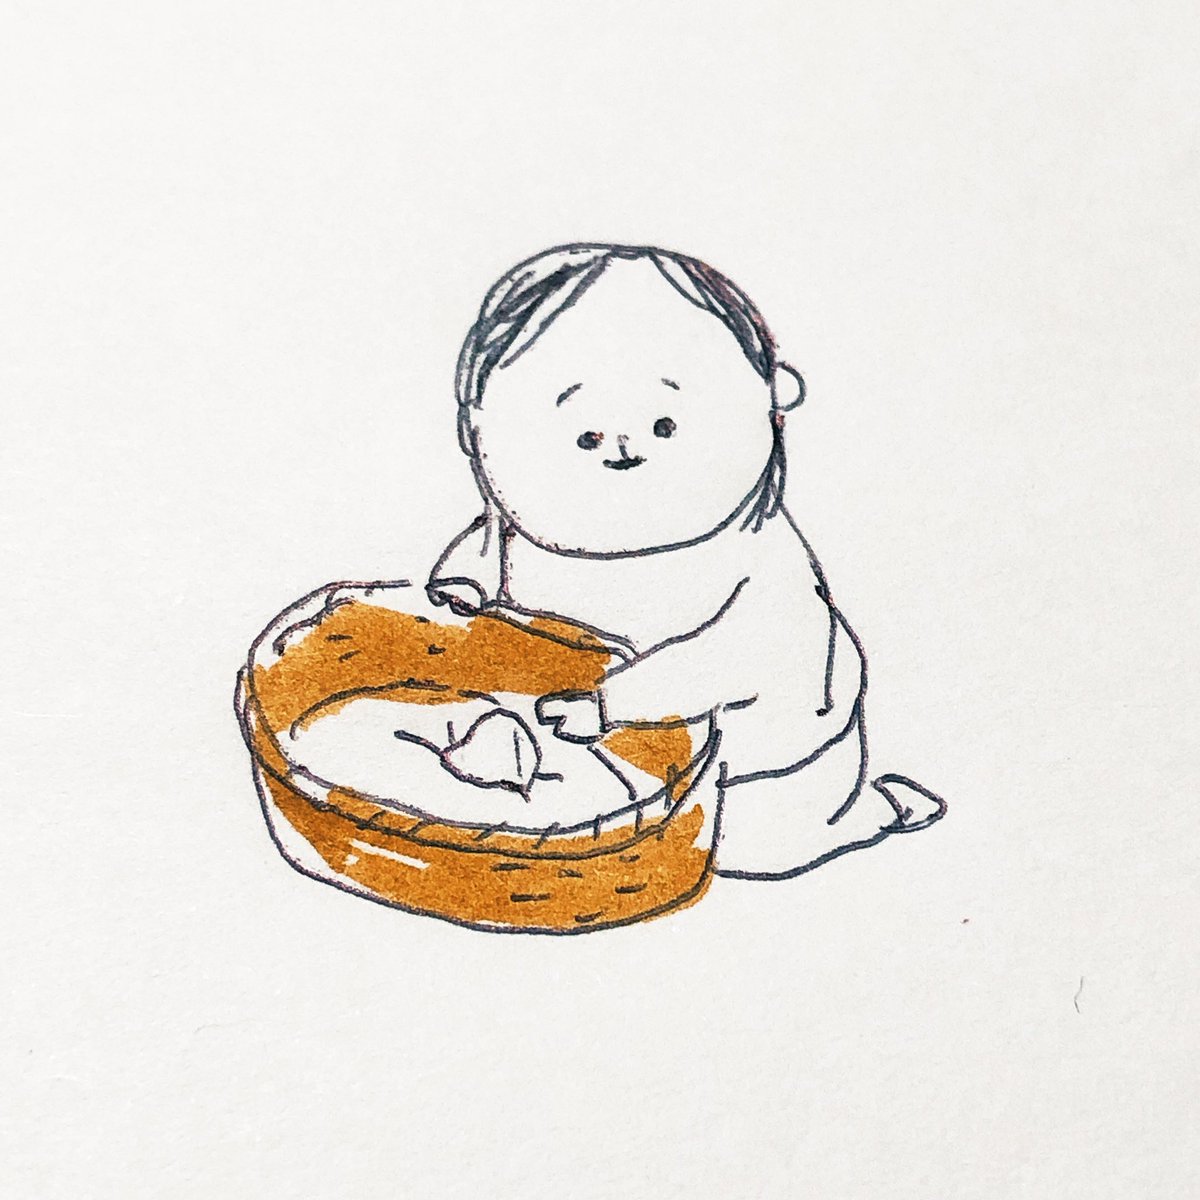 「幼い頃生まれて初めて「名菓ひよ子」をもらった時の記憶があるんですが…
あまりの可」|shigemiのイラスト